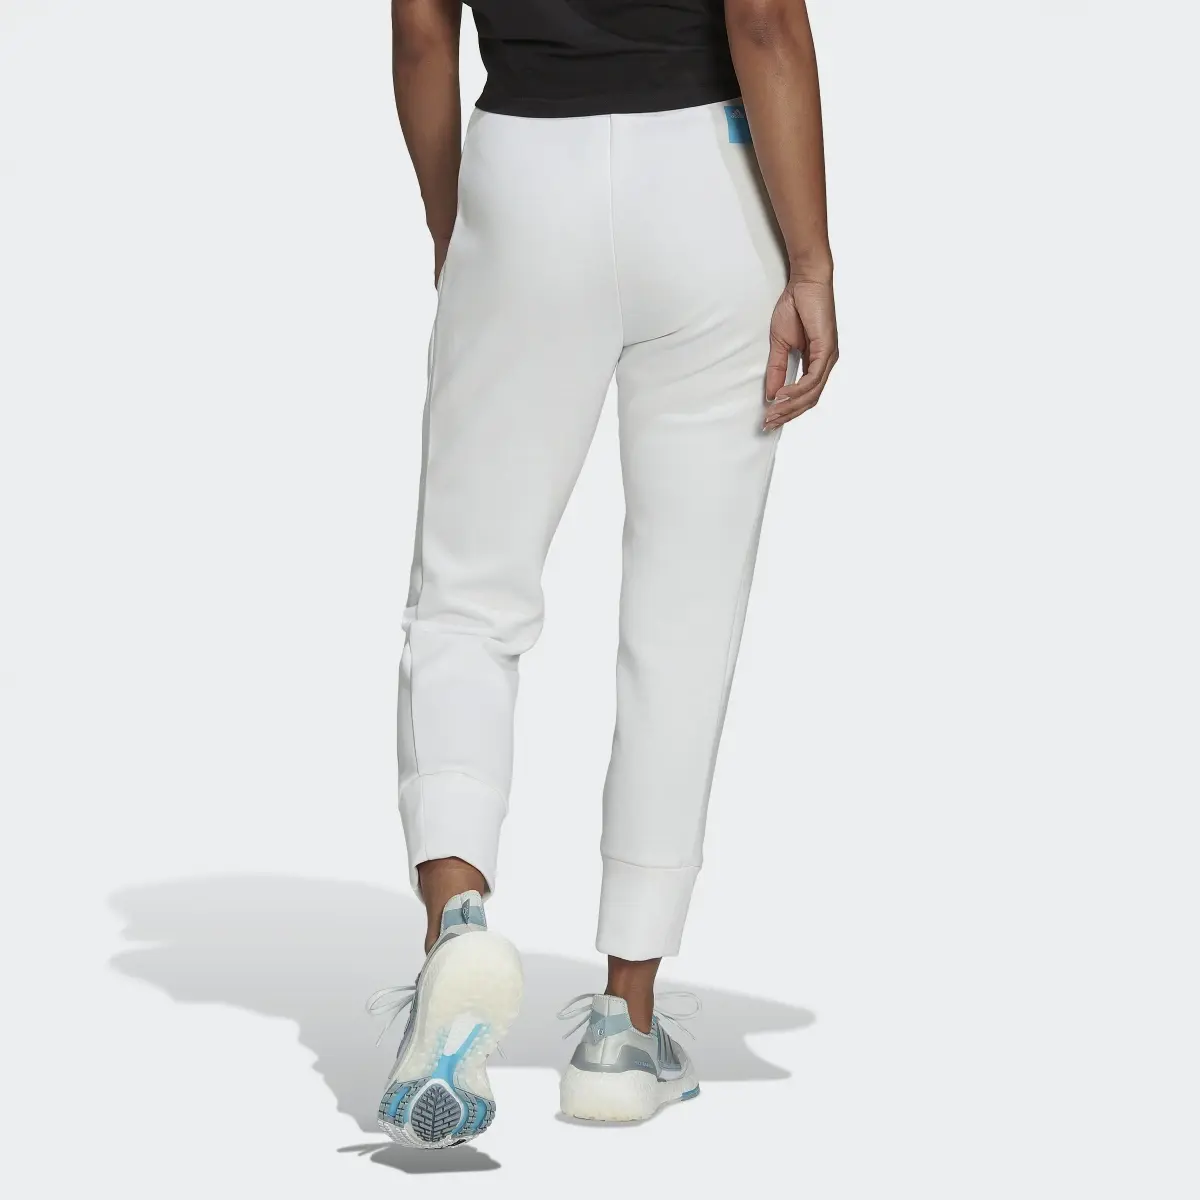 Adidas Pantaloni Mission Victory Slim-Fit High-Waist. 3